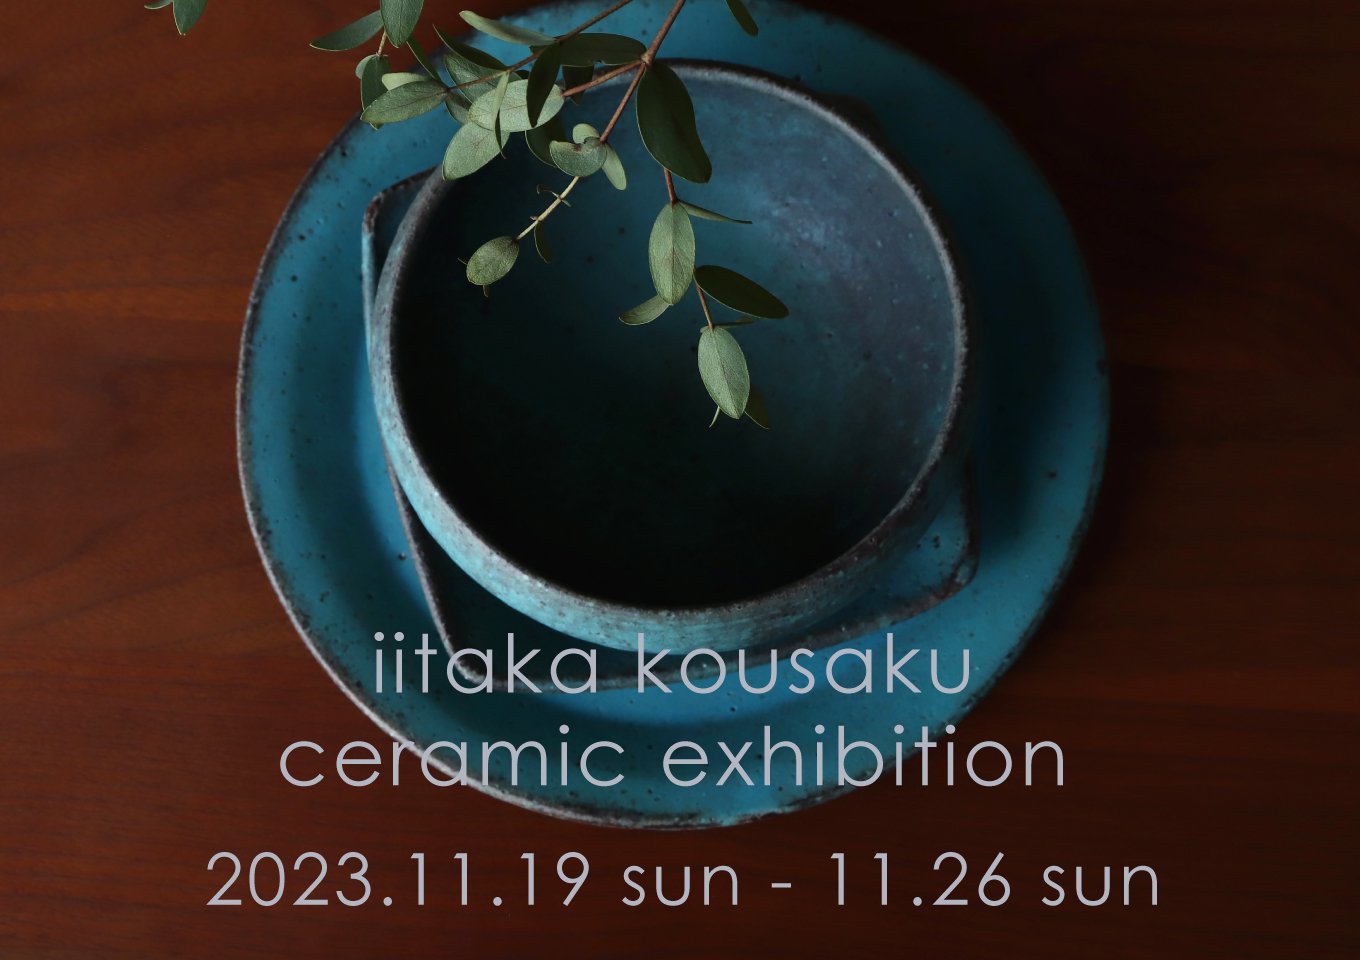 iitaka kousaku ceramic exhibition